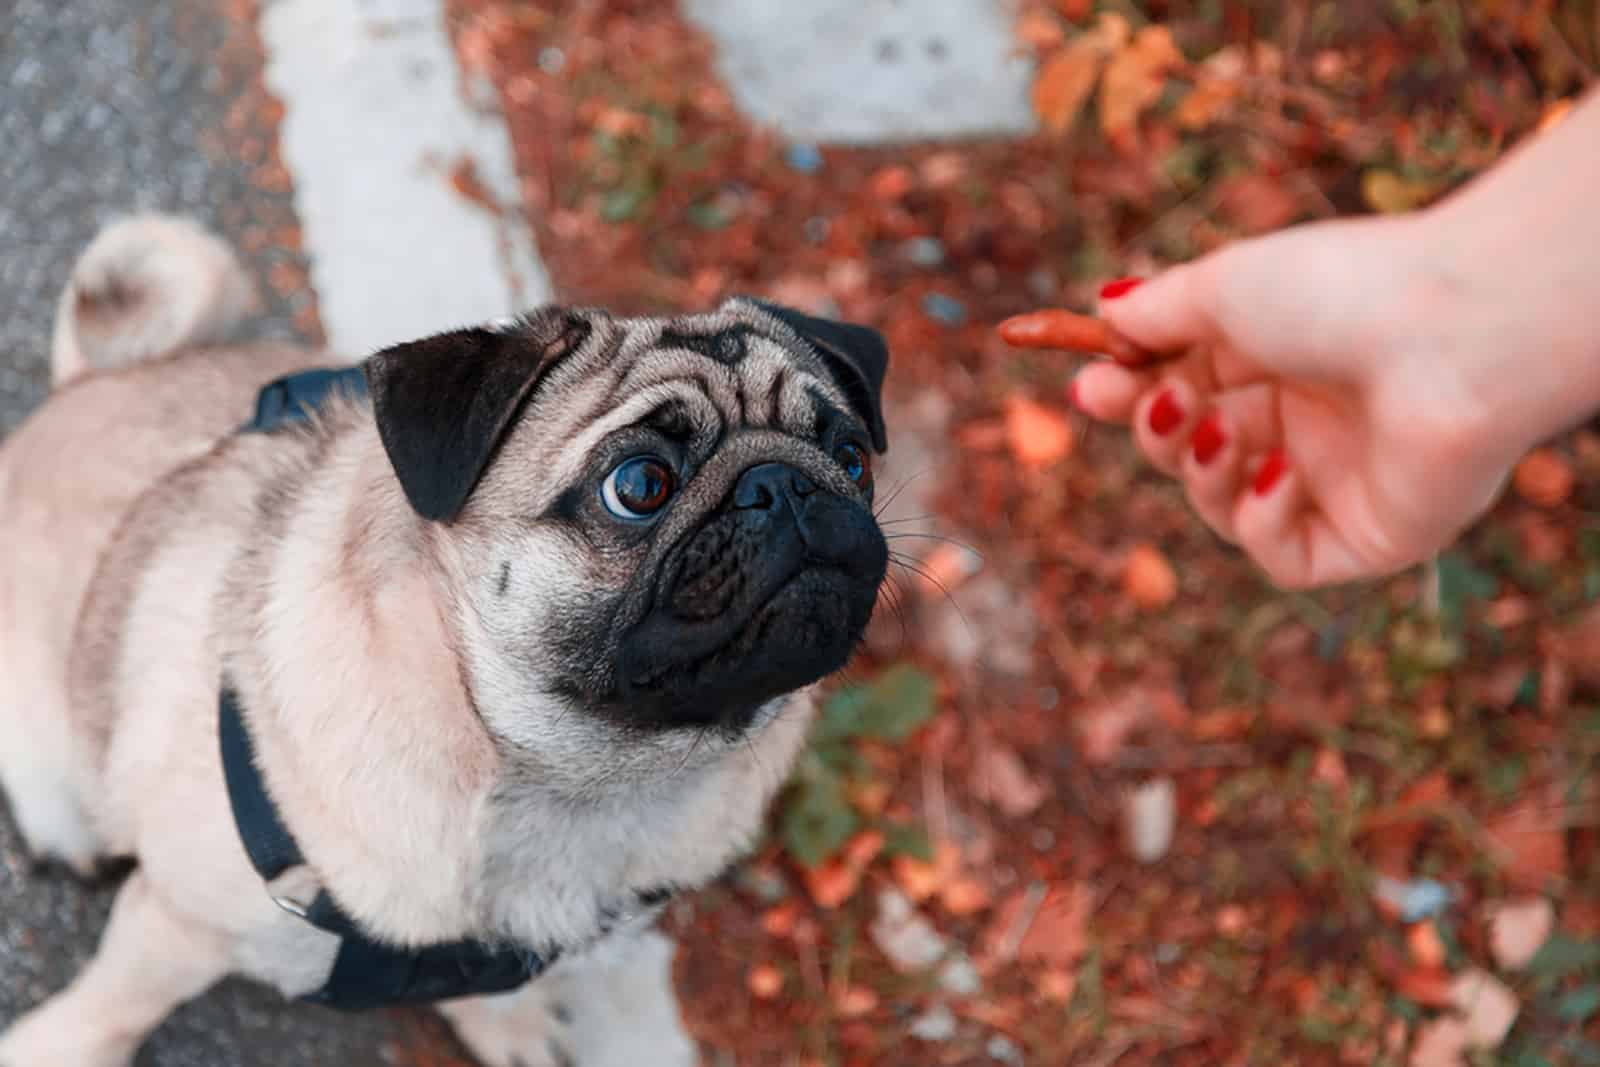 pug dog looking at feeding hand